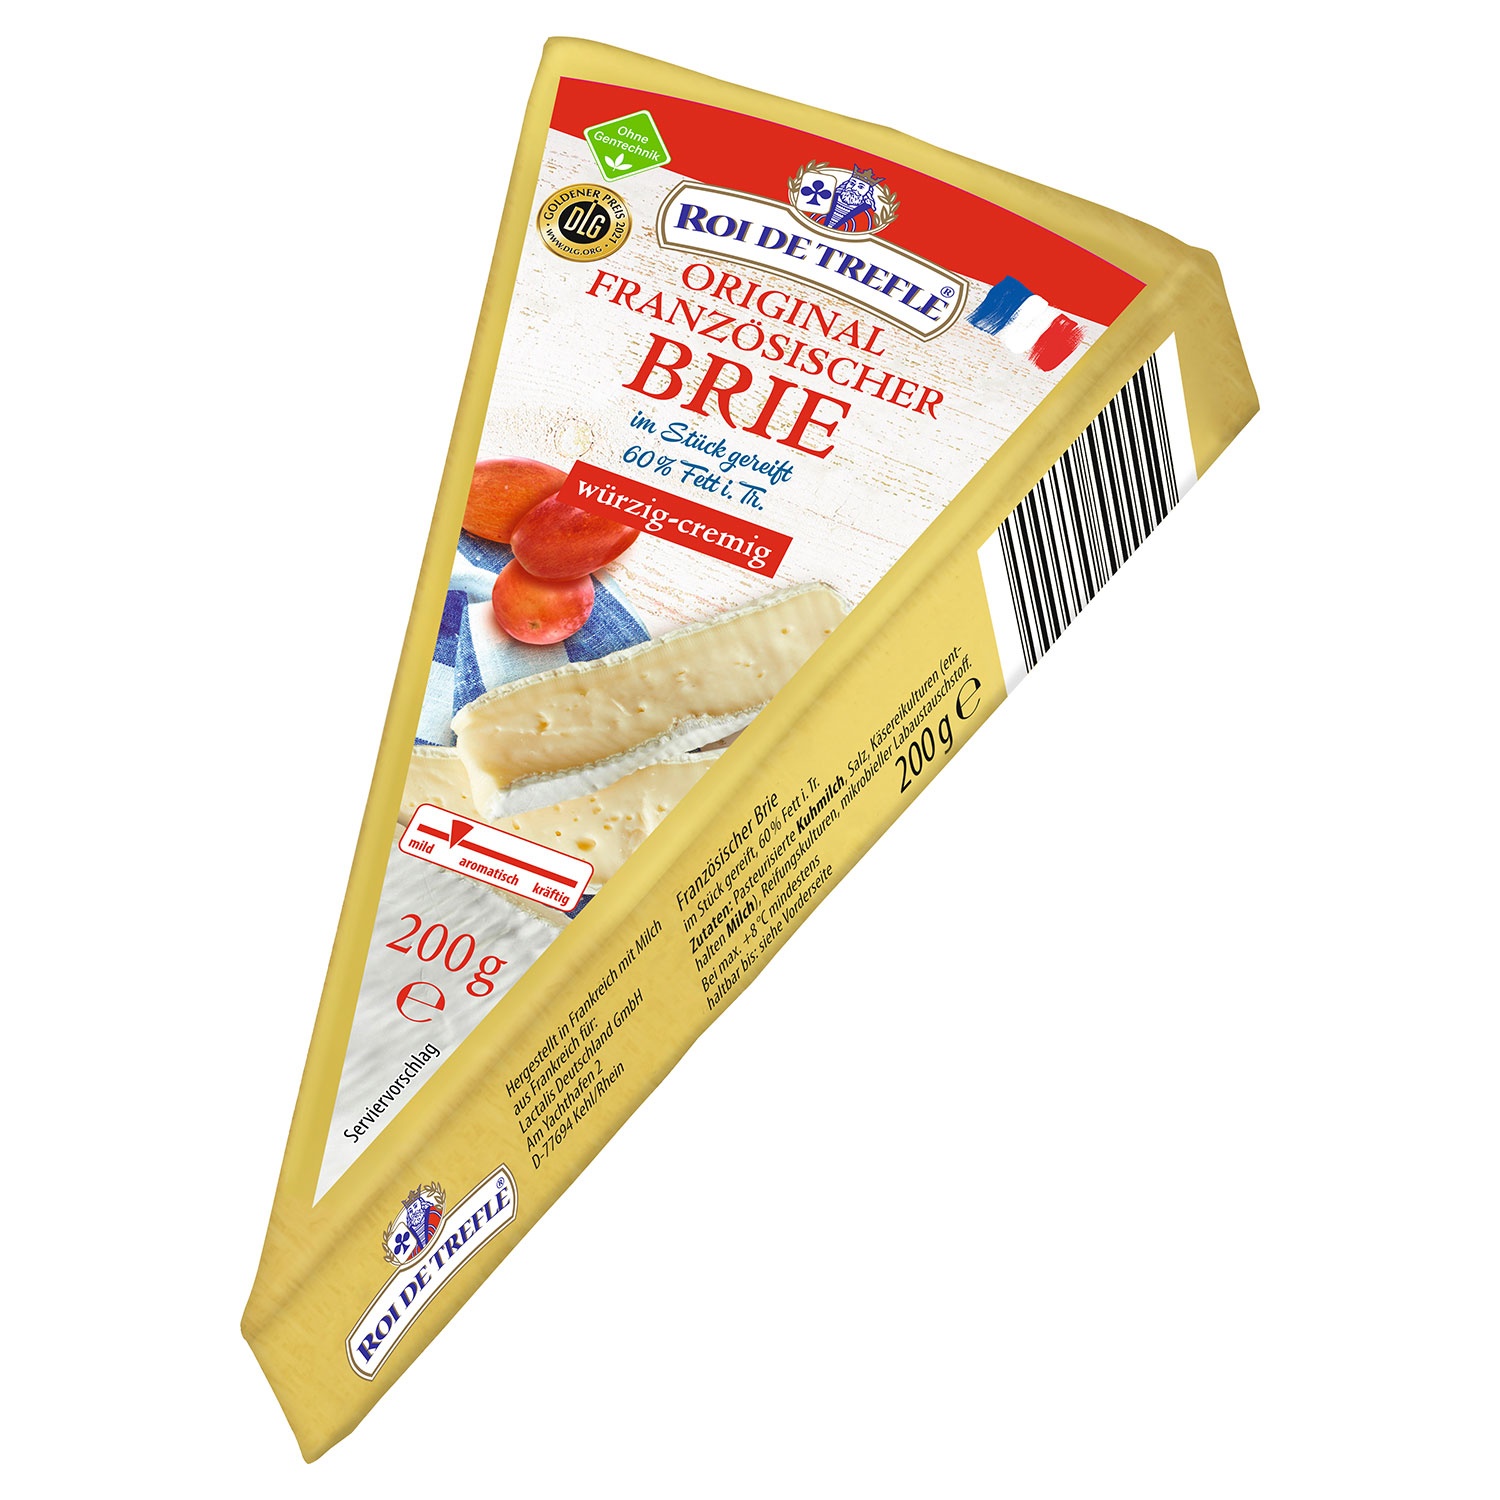 ROI DE TREFLE Französische Briespitze 60% Fett i. Tr. 200 g